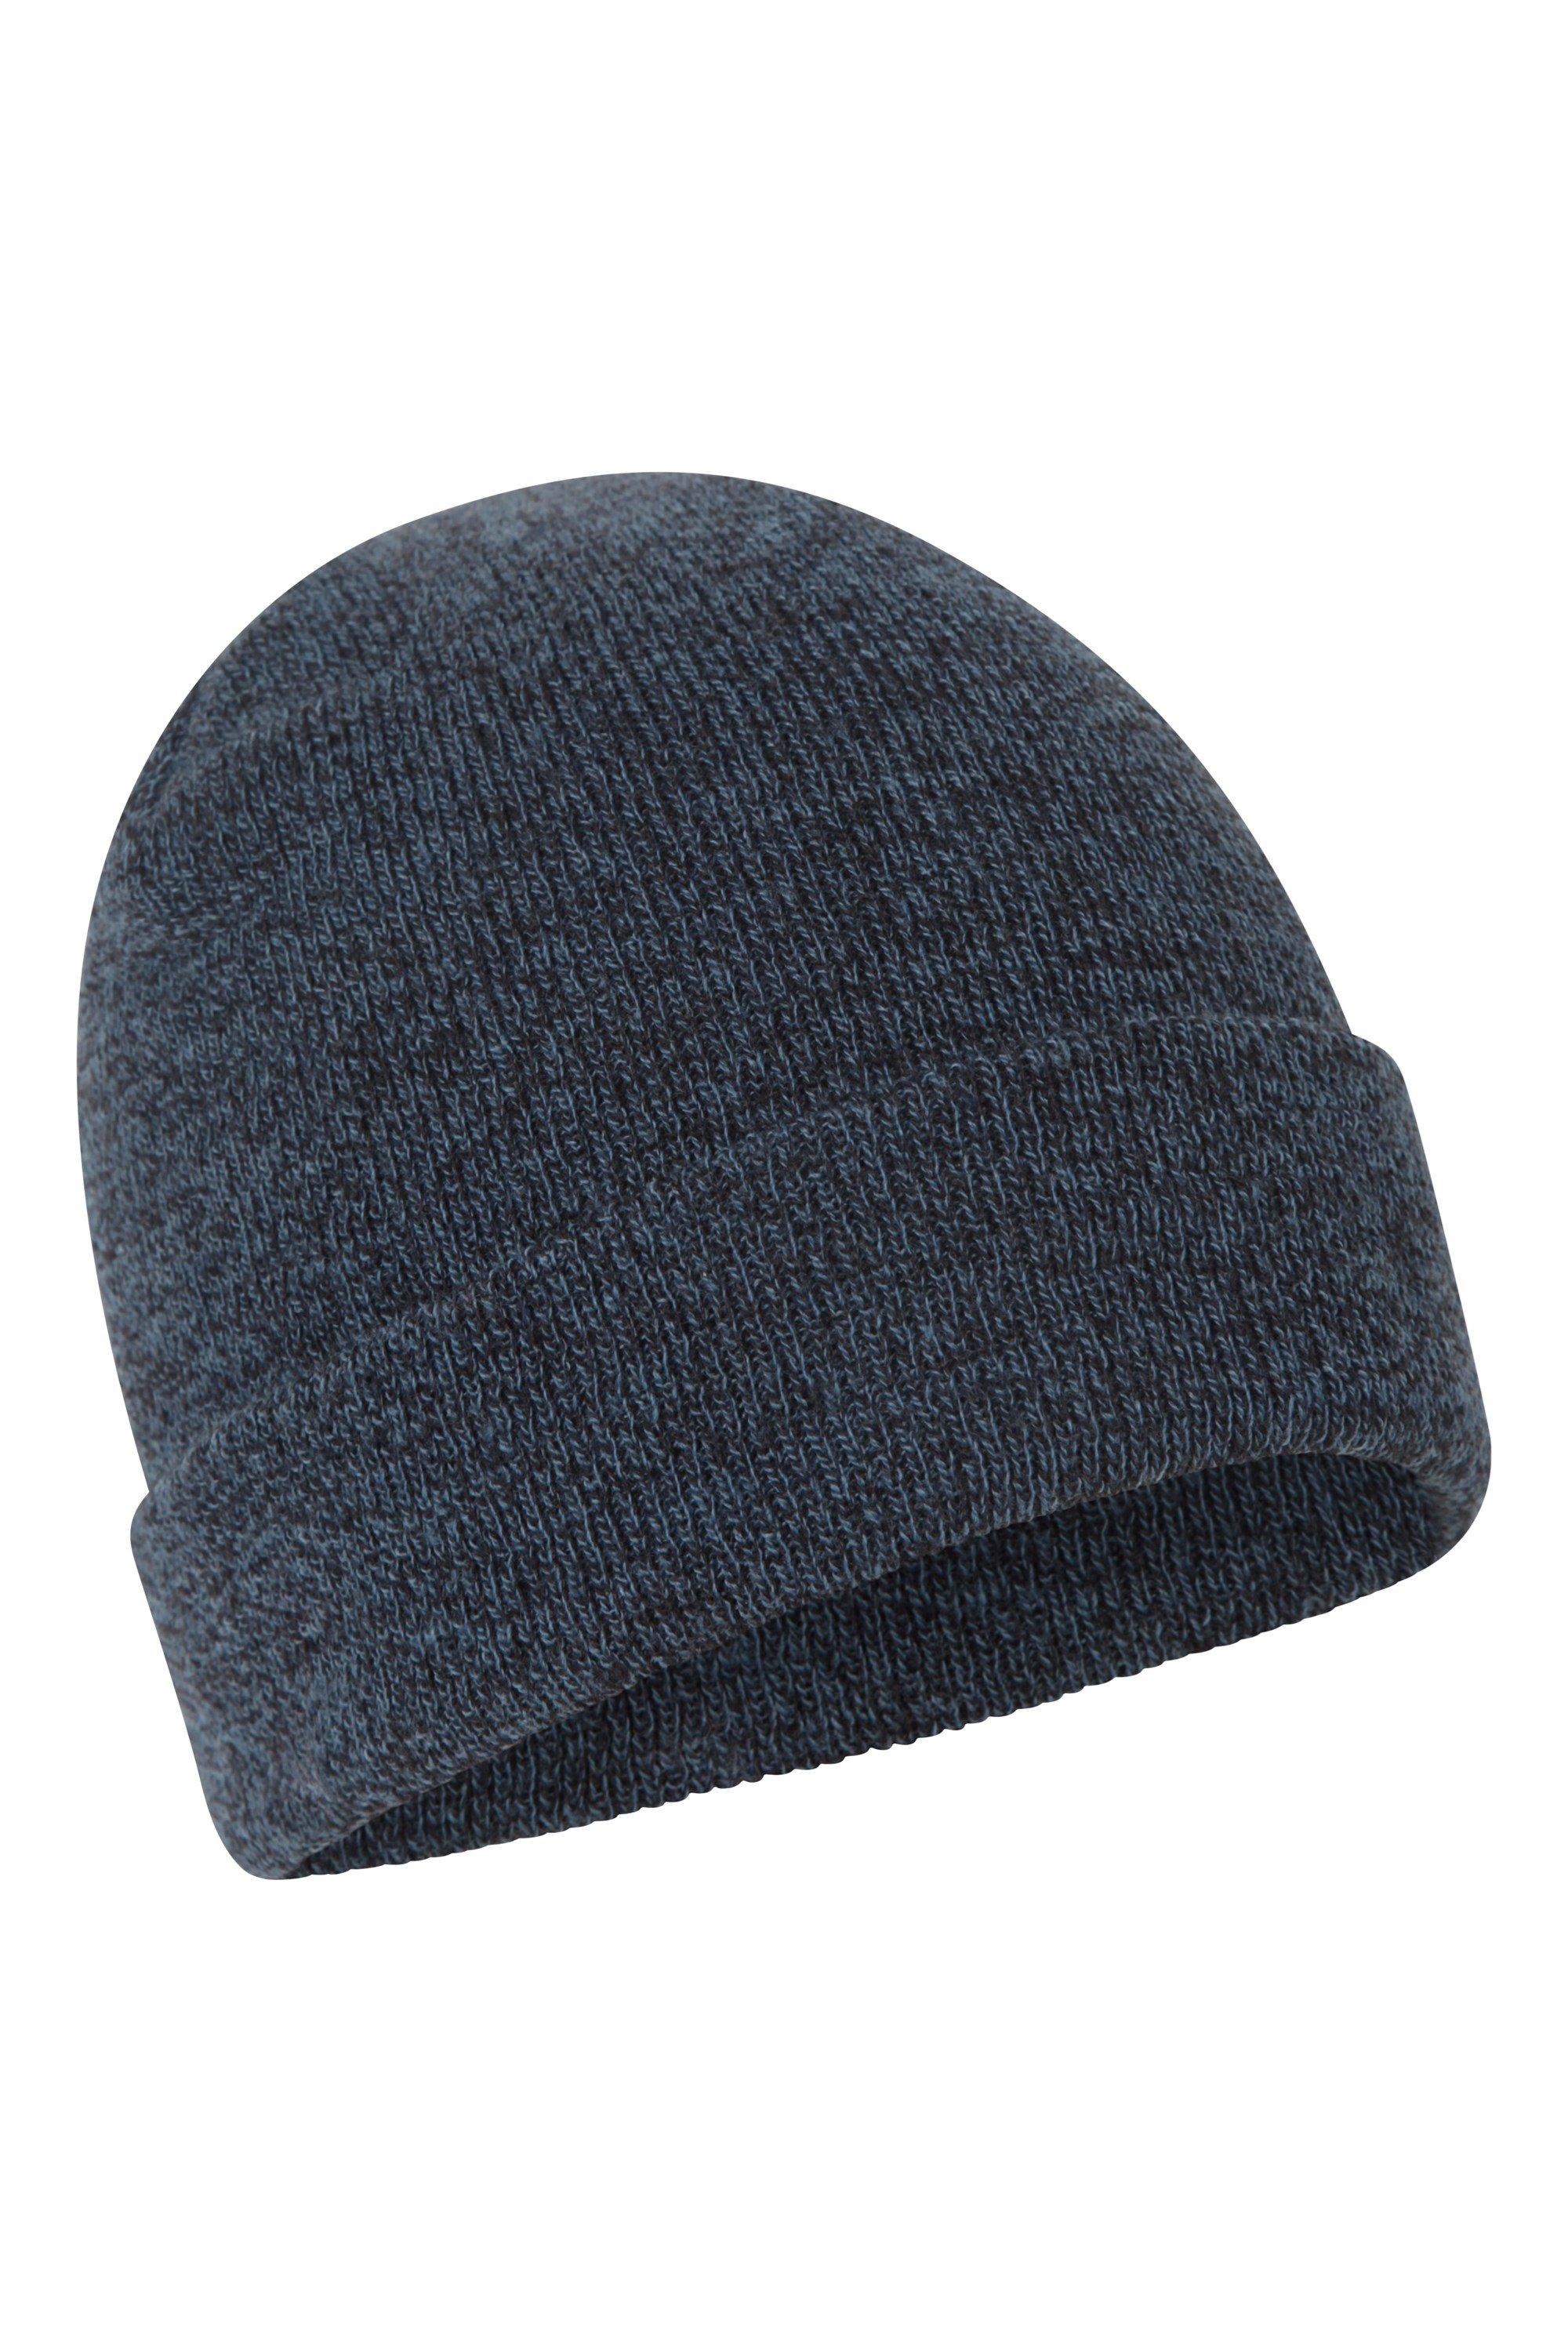 Шапка-бини «Компас» Толстая вязаная теплая легкая зимняя шапка Mountain Warehouse, синий цена и фото